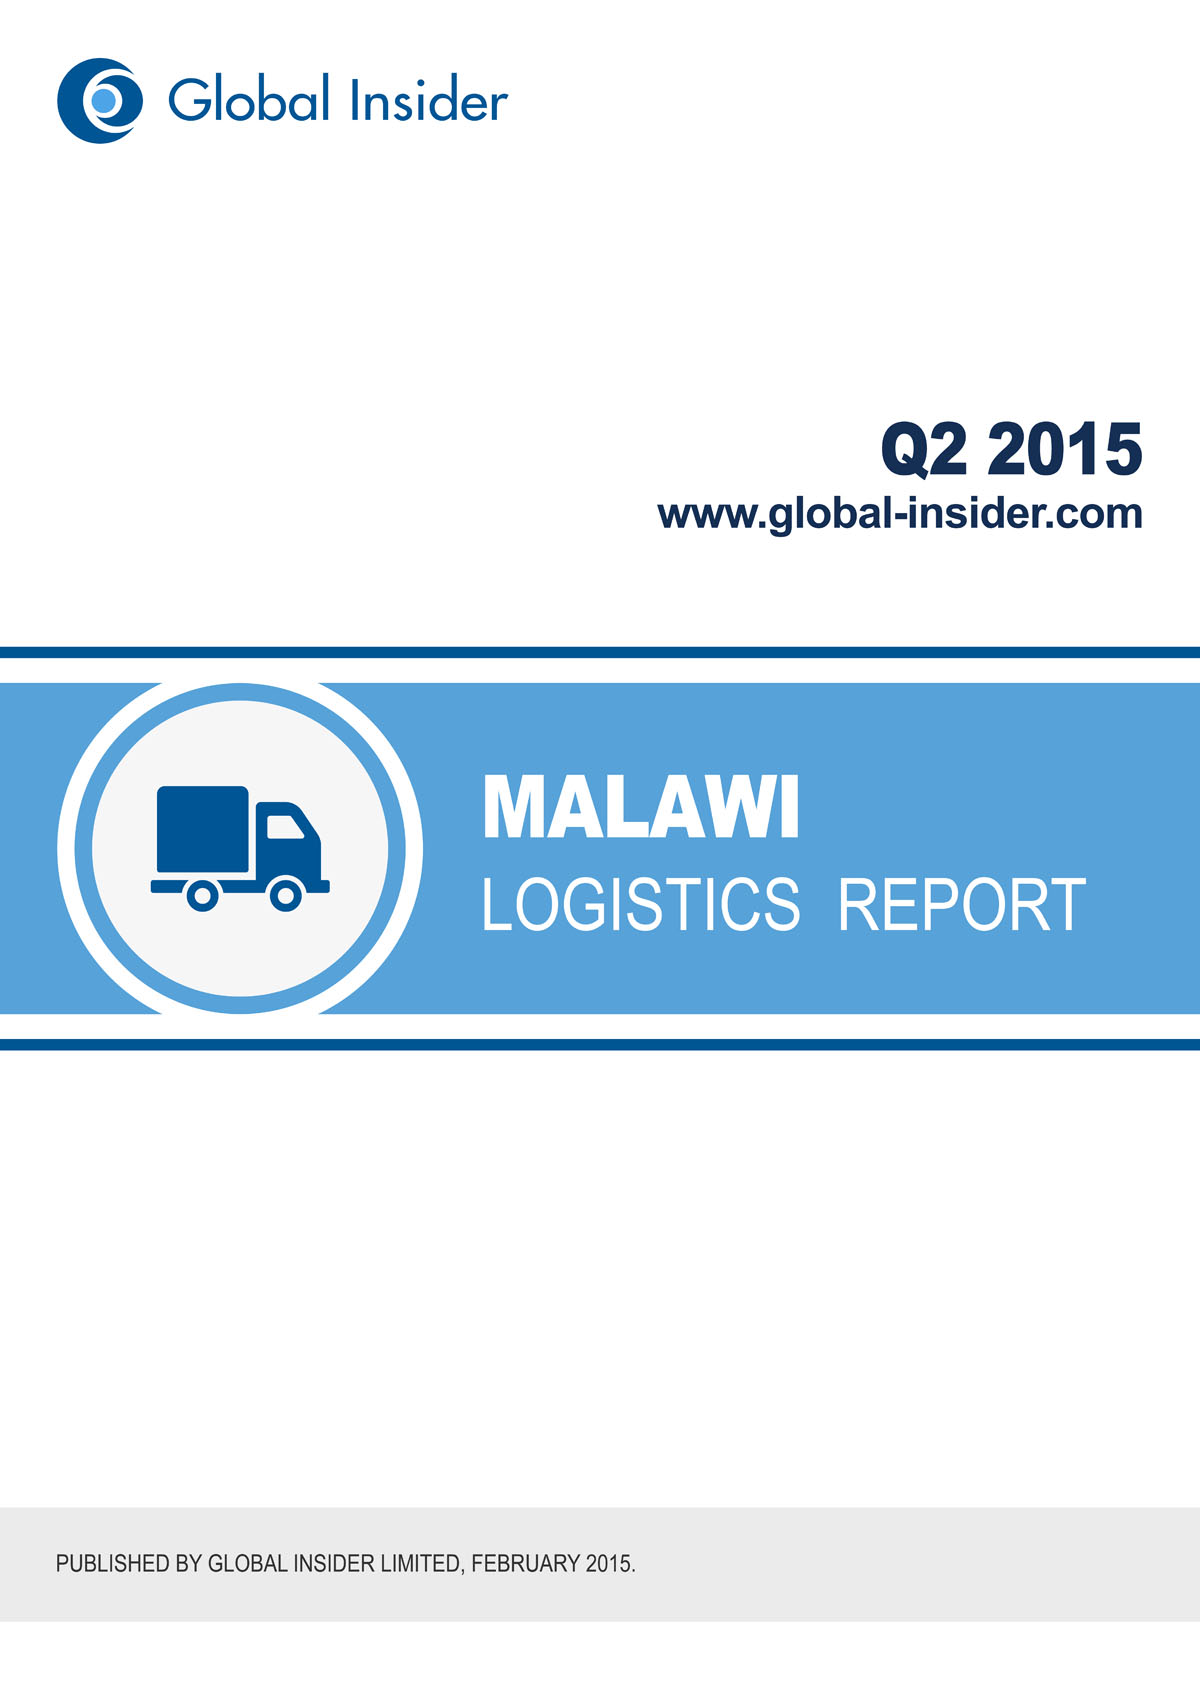 Malawi Logistics Report